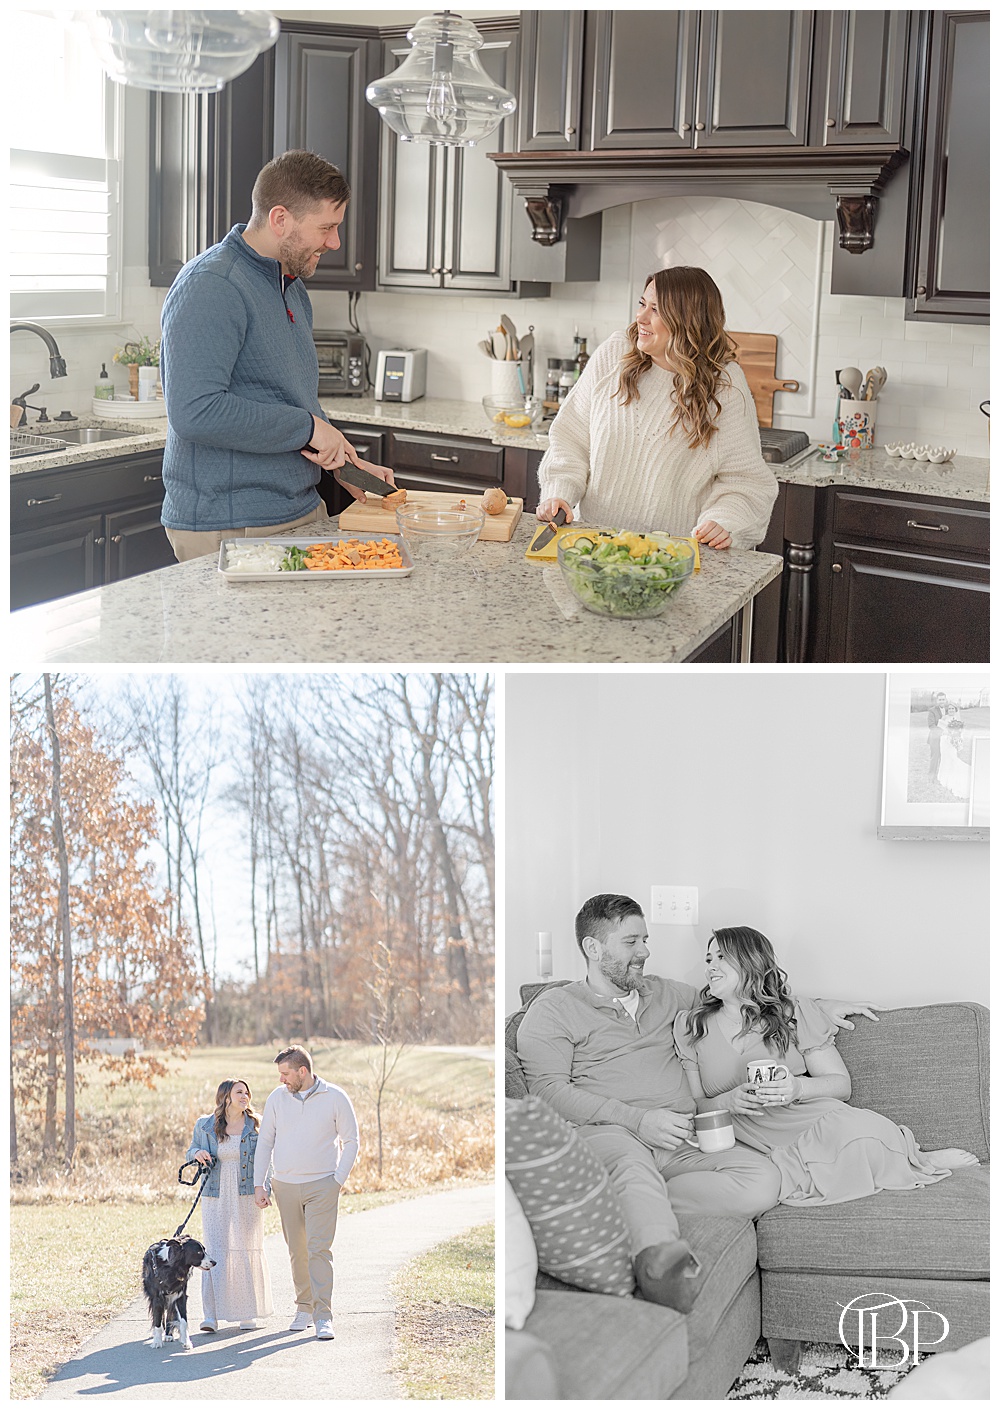 Collage of Fairfax, Virginia lifestyle family photos